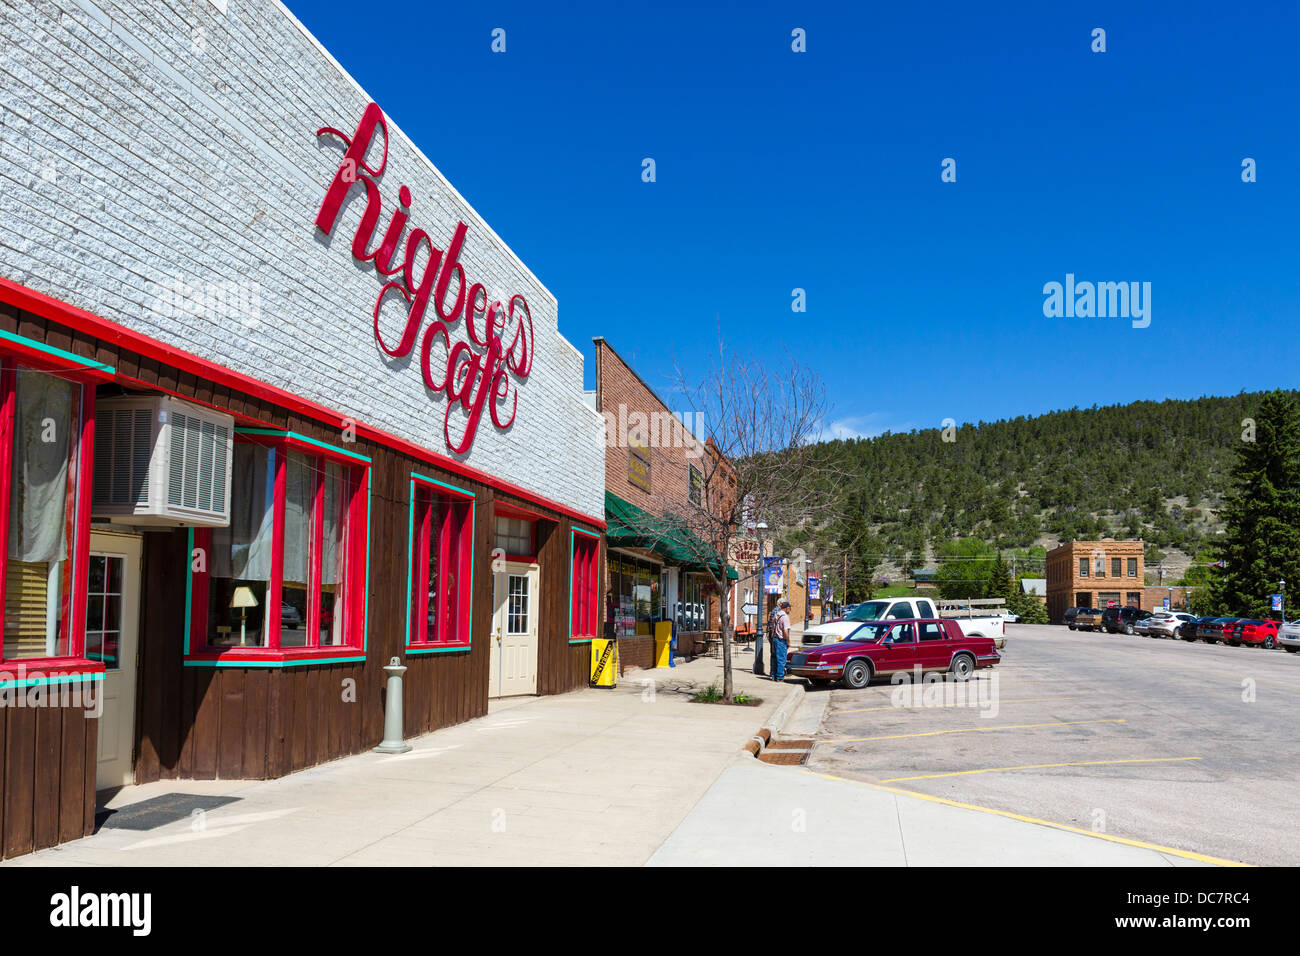 Tiendas en el centro de Sundance, Wyoming, EE.UU. Foto de stock